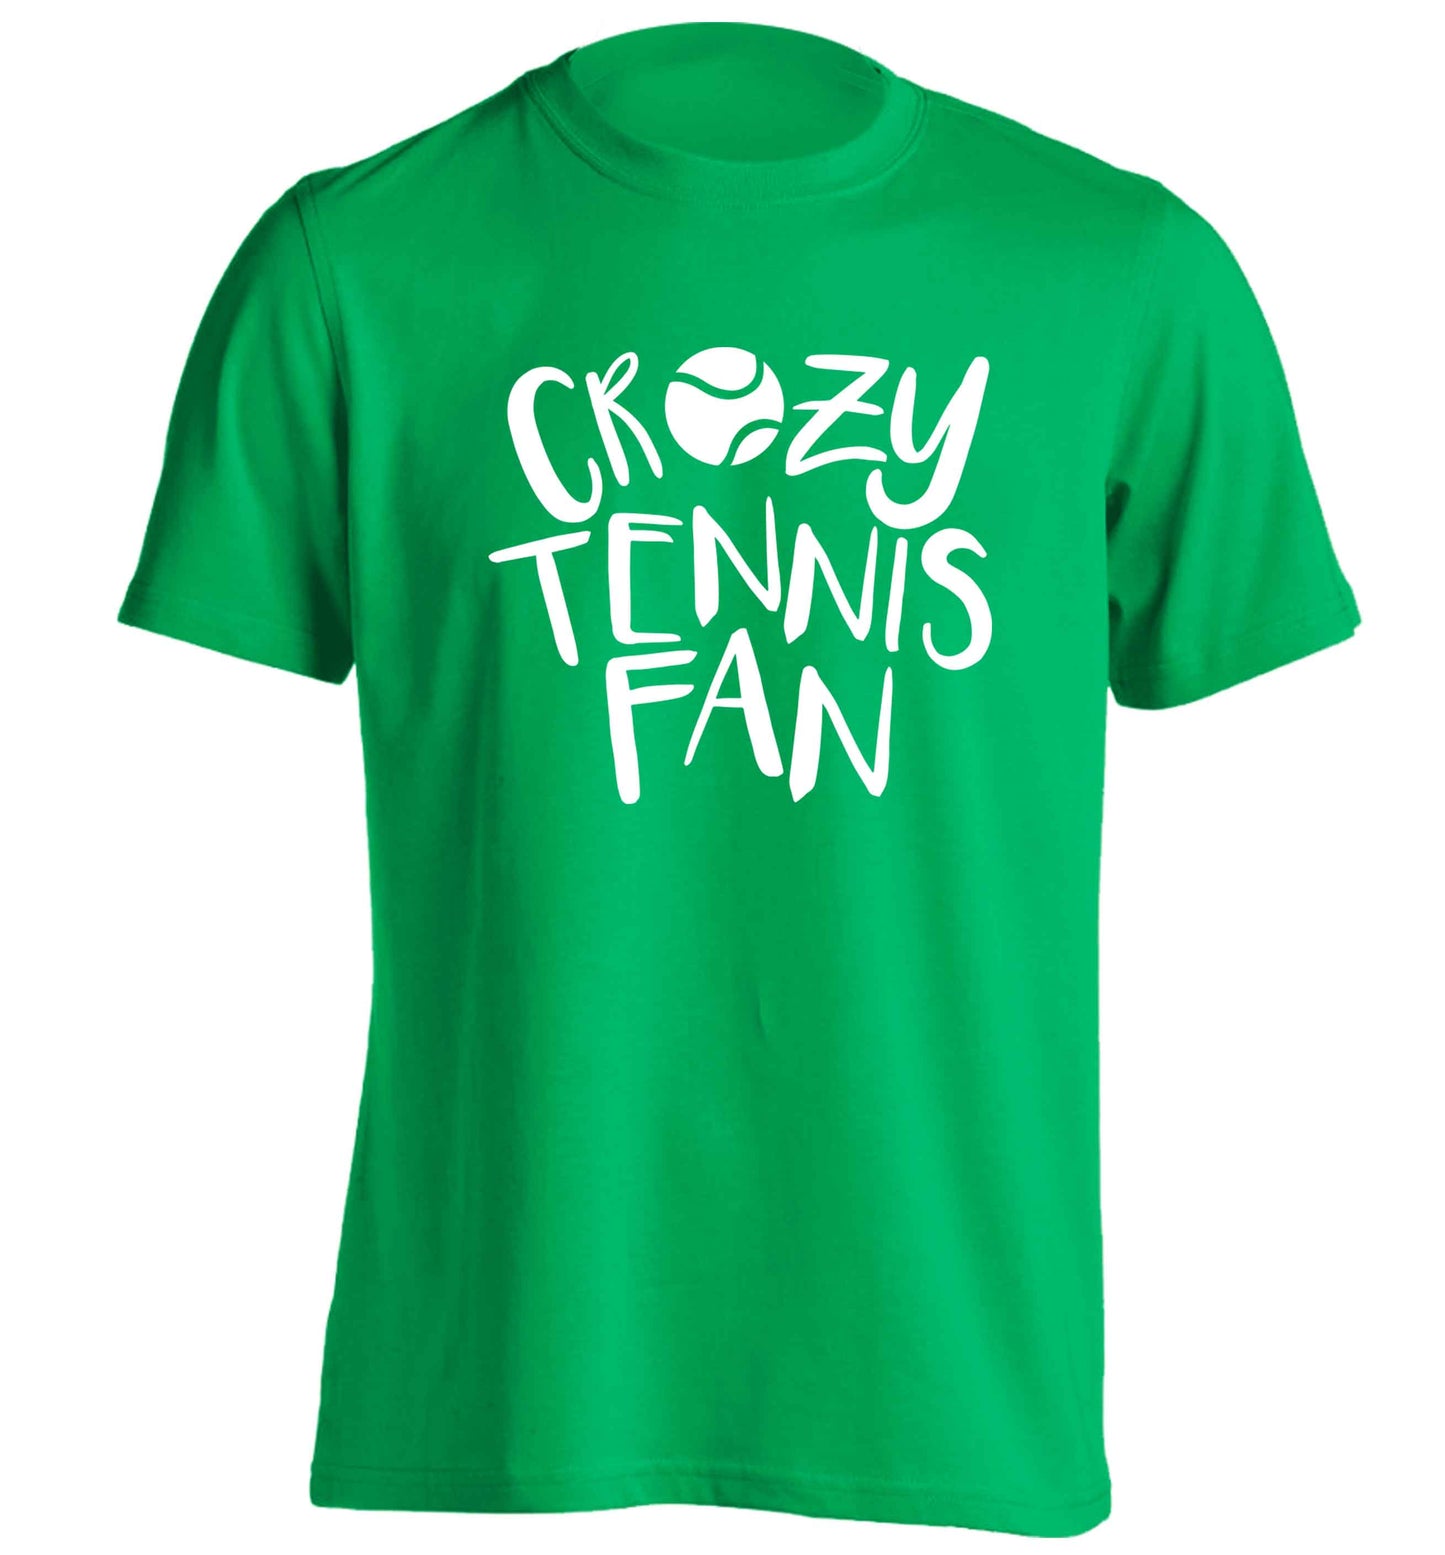 Crazy tennis fan adults unisex green Tshirt 2XL